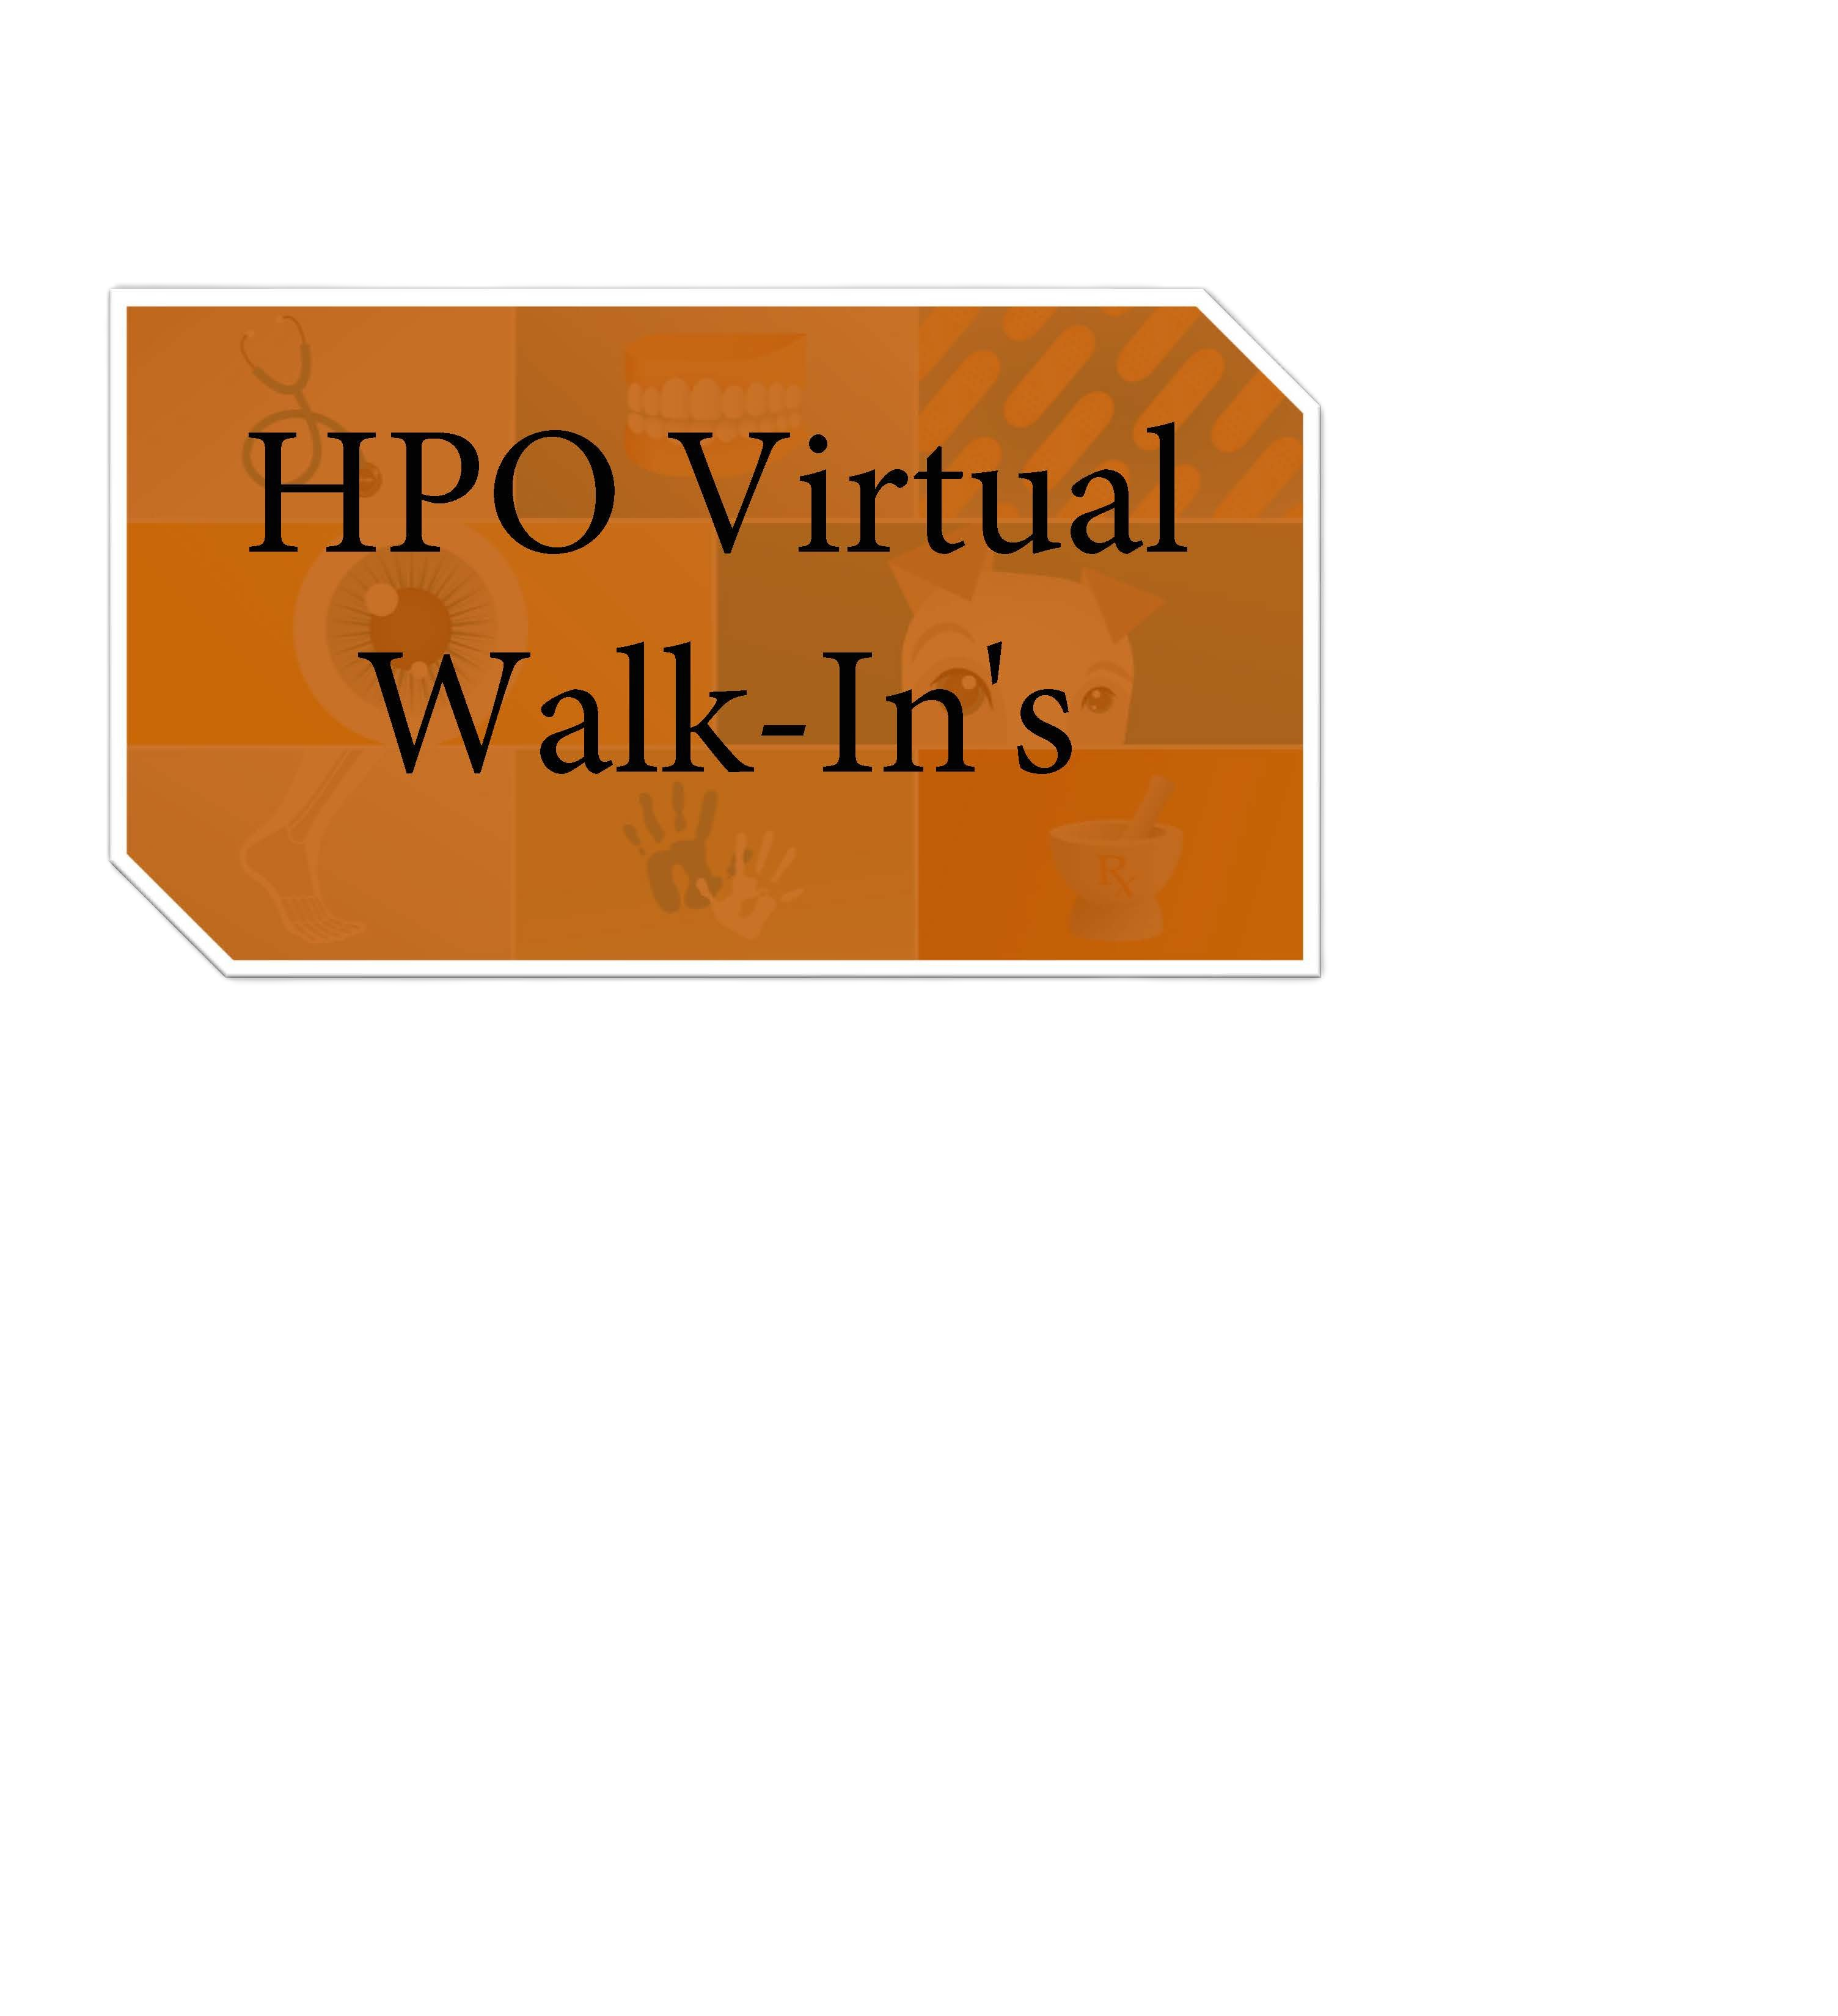 HPO Walk-In pic